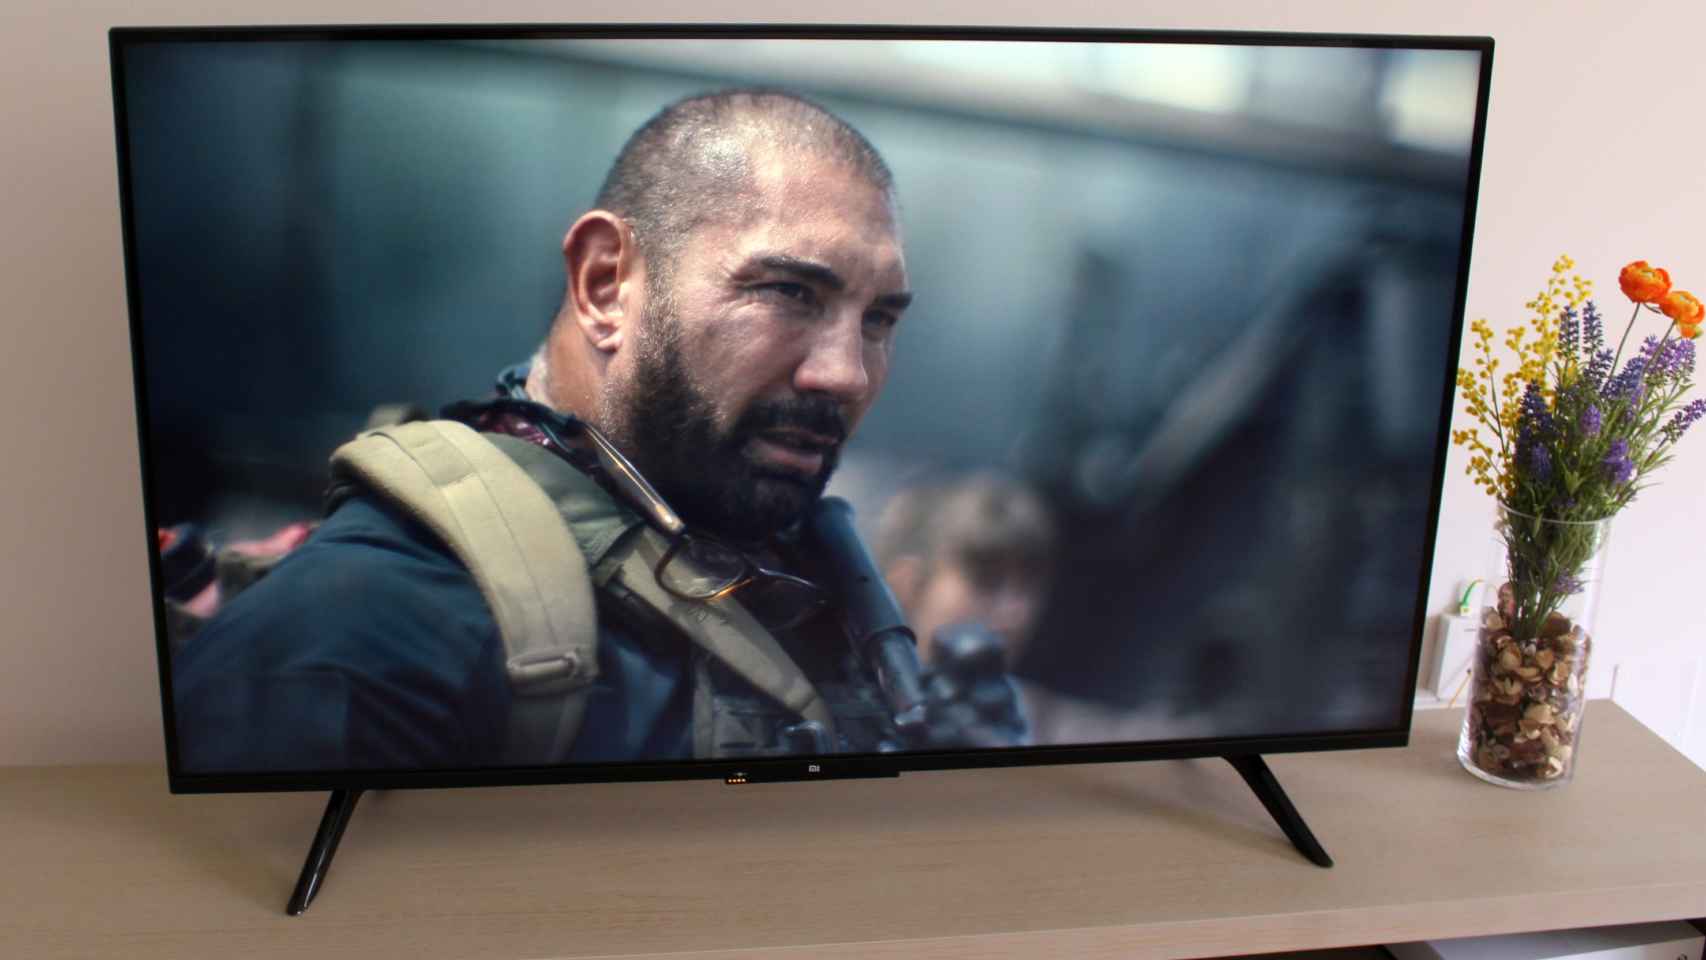 Smart TV de 55 pulgadas Samsung QLED 4K en oferta por menos de 800